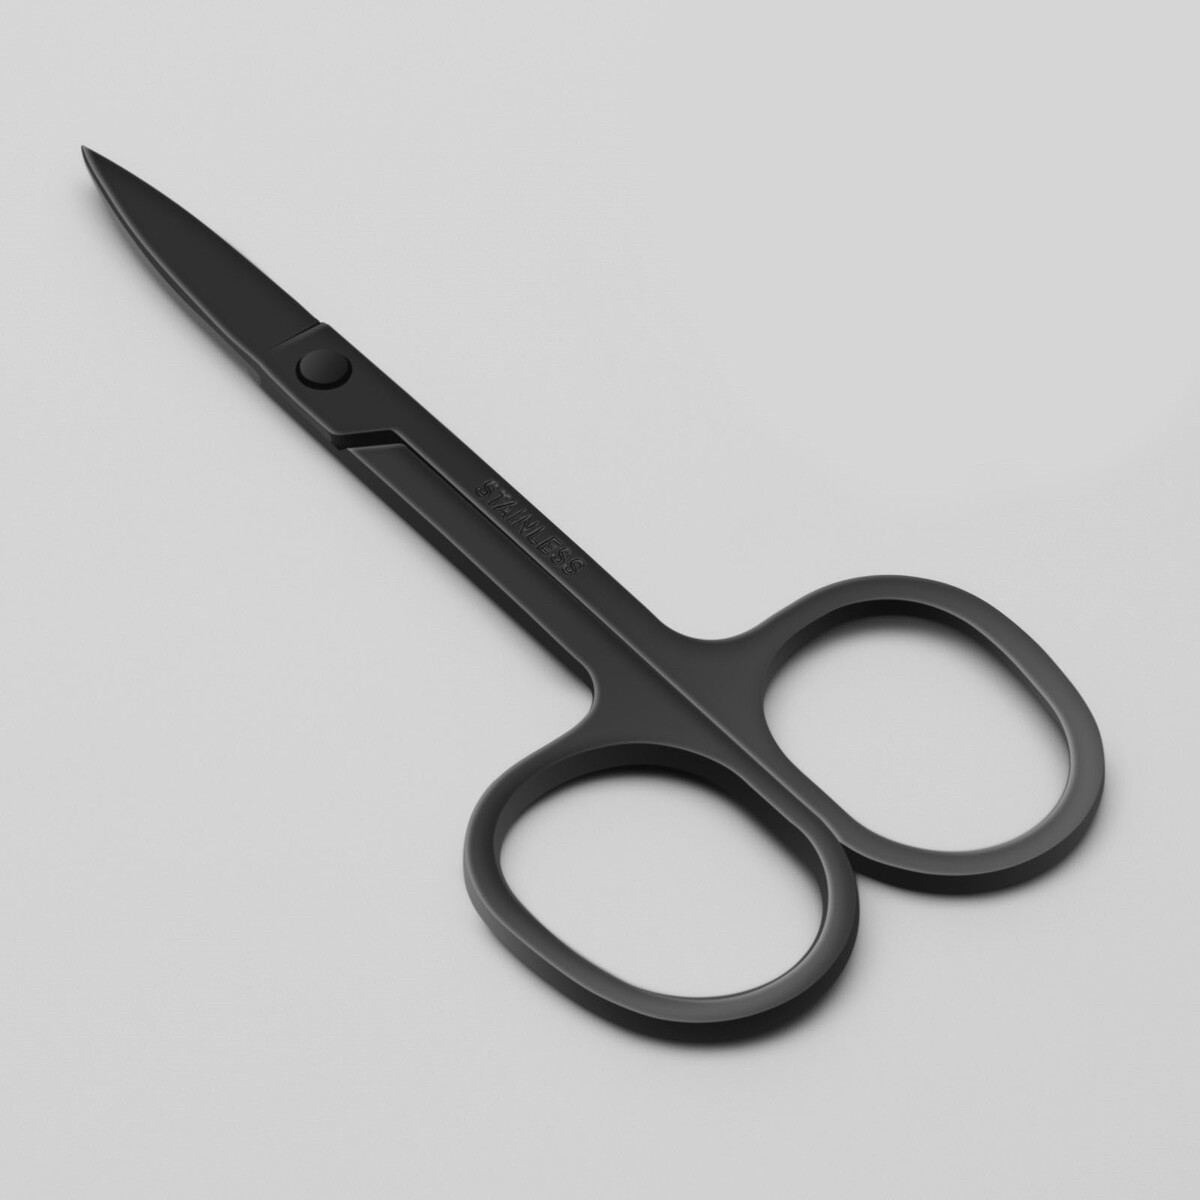 Ножницы маникюрные, широкие, загнутые, 9 см, цвет черный ножницы для детского маникюра ладушки мультидом трейдинг vl90 136